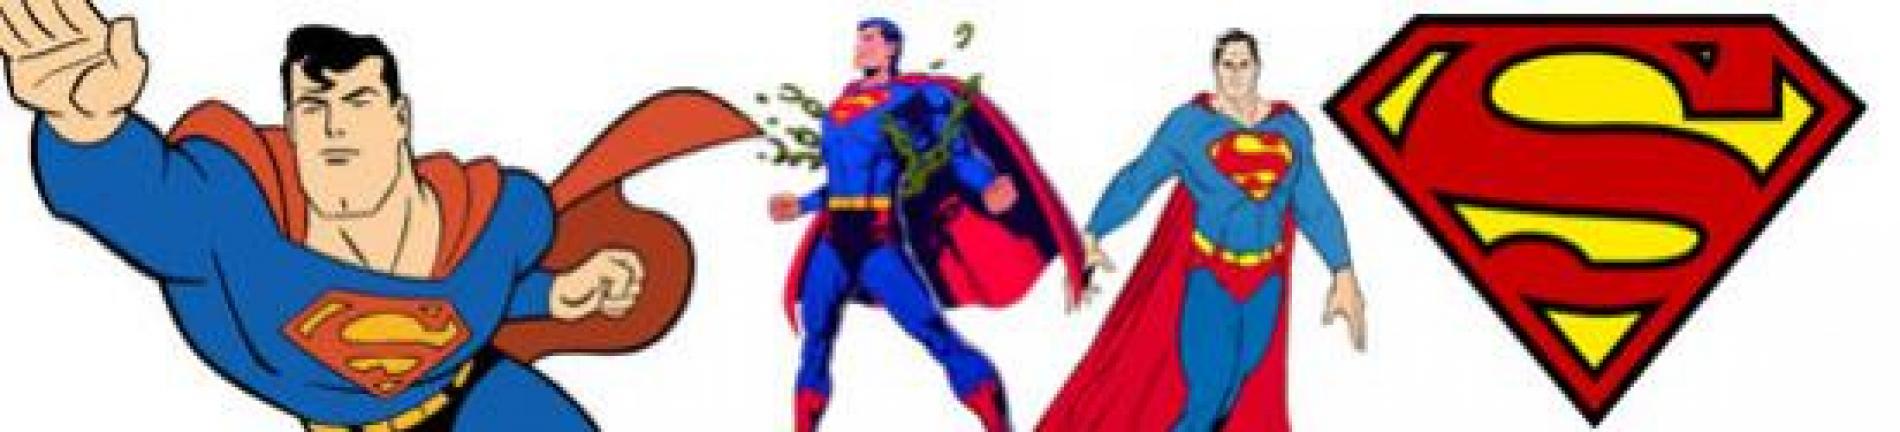 ภาพระบายสี Superman ซูเปอร์แมน